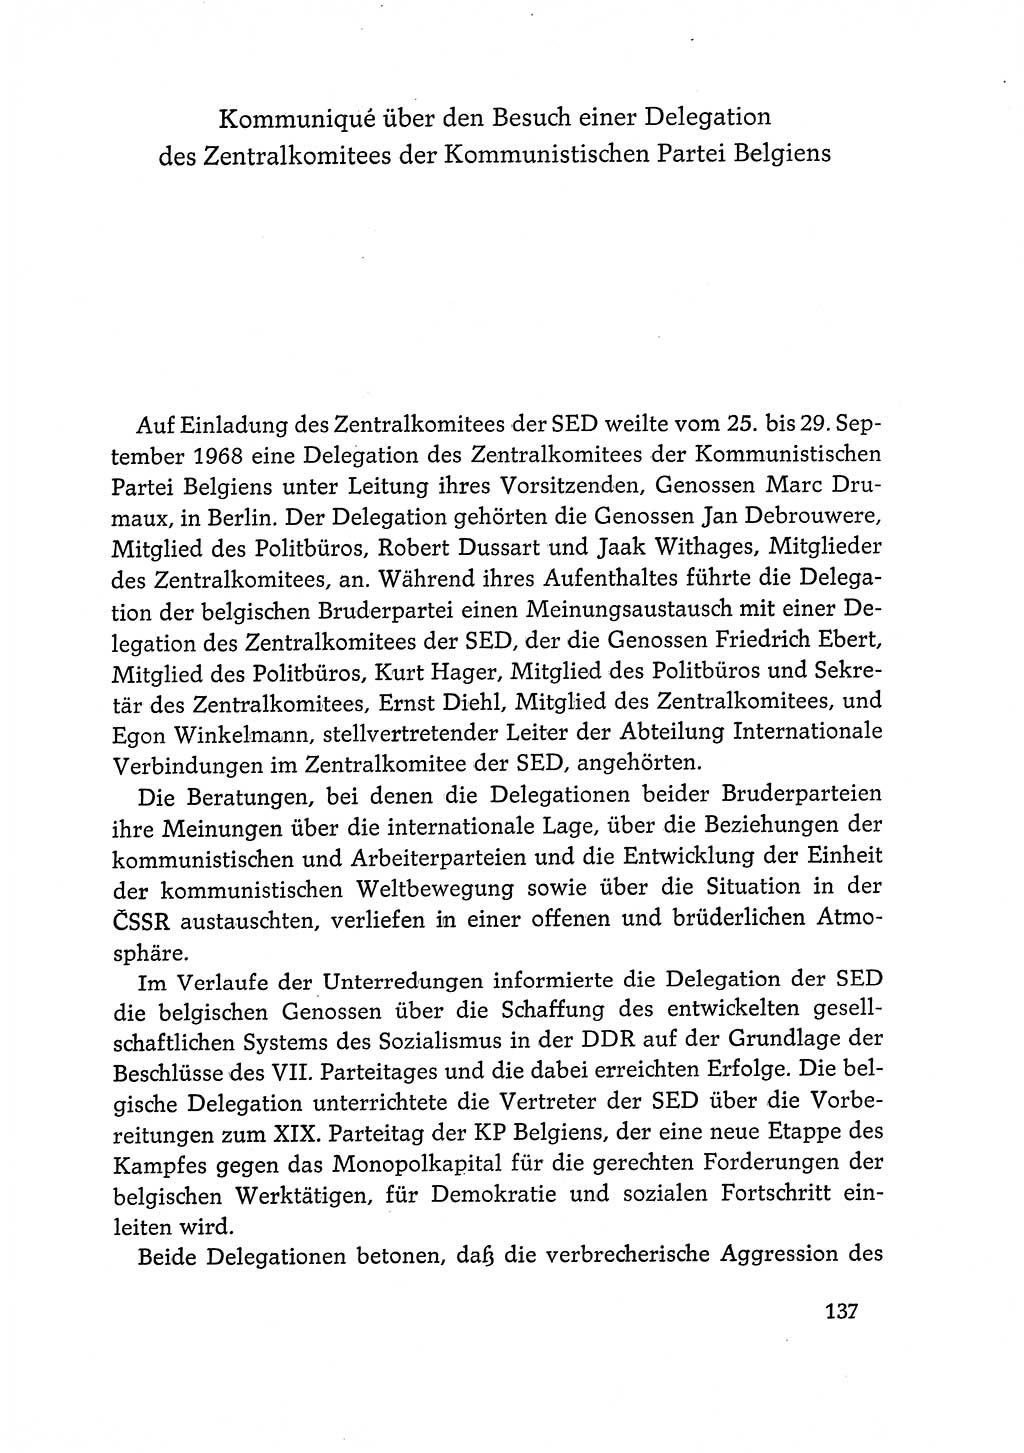 Dokumente der Sozialistischen Einheitspartei Deutschlands (SED) [Deutsche Demokratische Republik (DDR)] 1968-1969, Seite 137 (Dok. SED DDR 1968-1969, S. 137)